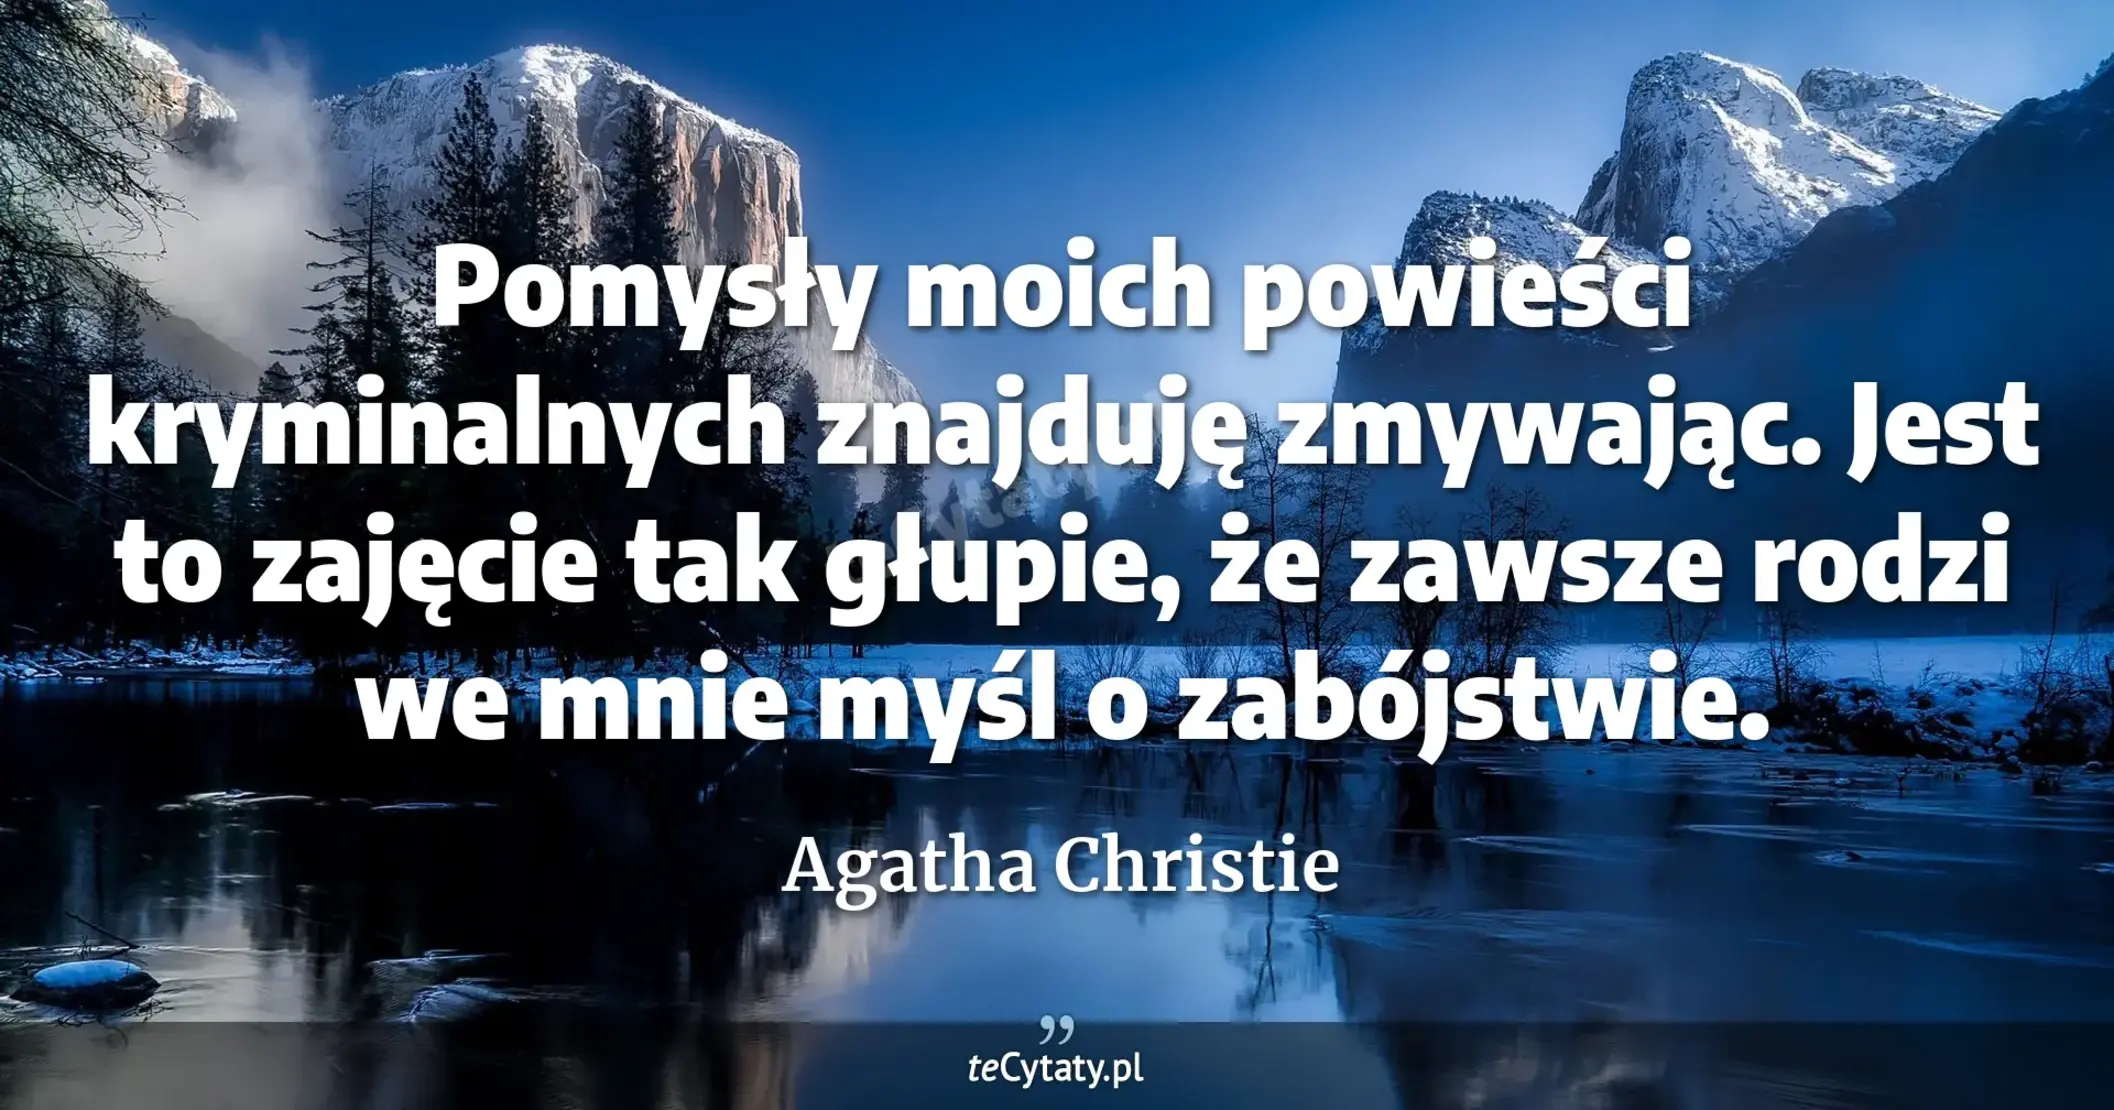 Pomysły moich powieści kryminalnych znajduję zmywając. Jest to zajęcie tak głupie, że zawsze rodzi we mnie myśl o zabójstwie. - Agatha Christie